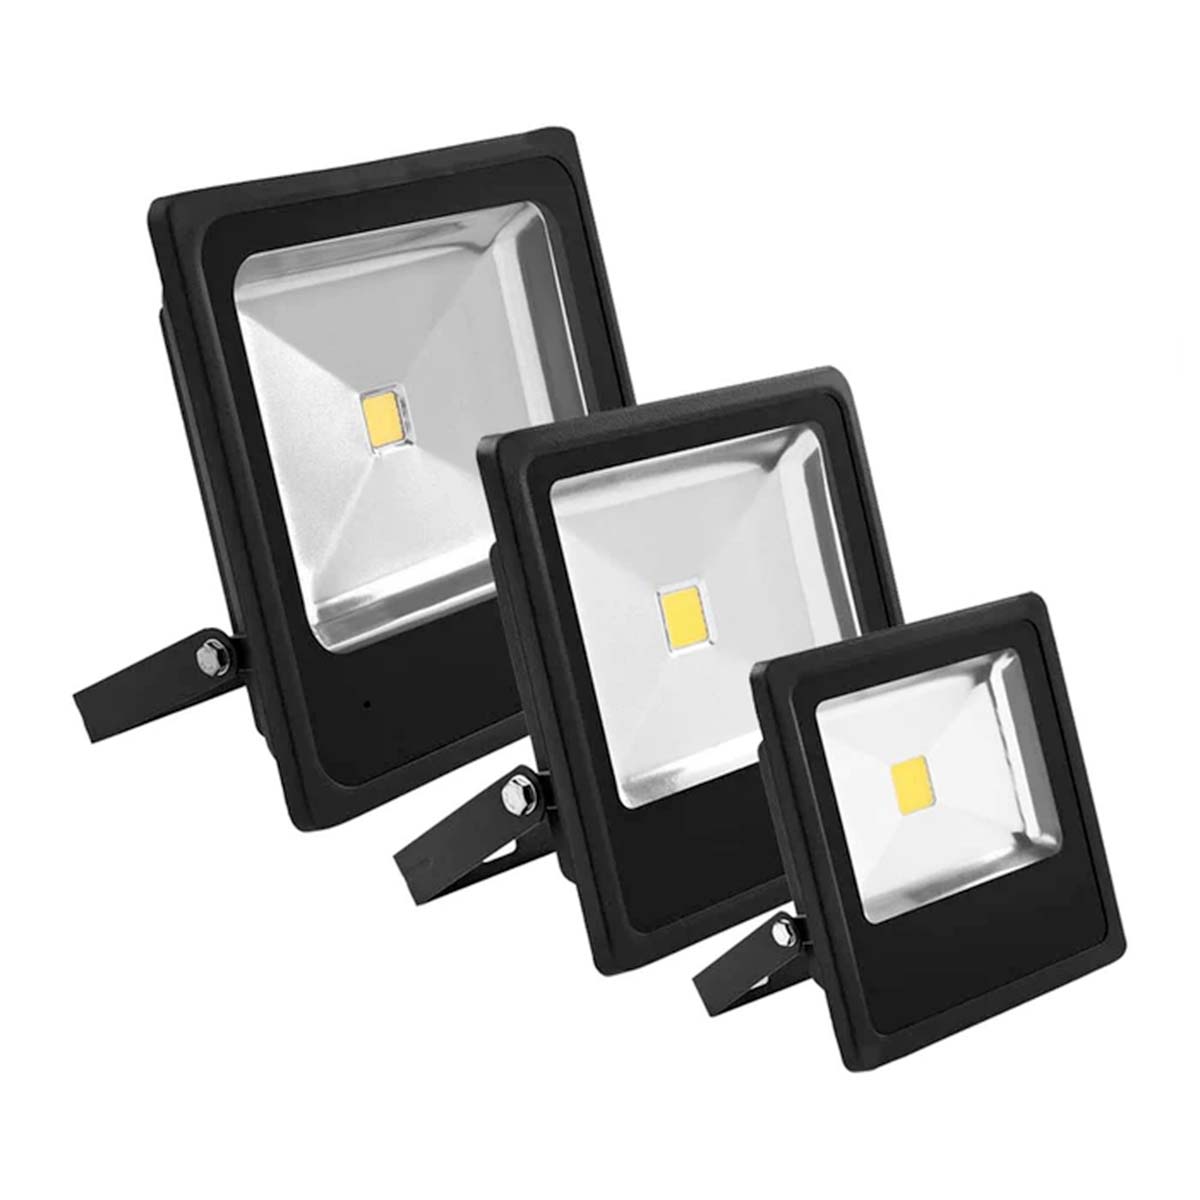 G.W.S LED Wholesale Ltd. Slim LED Floodlights Slim Black Casing LED Flood Light, Buy 1 Get 1 Free